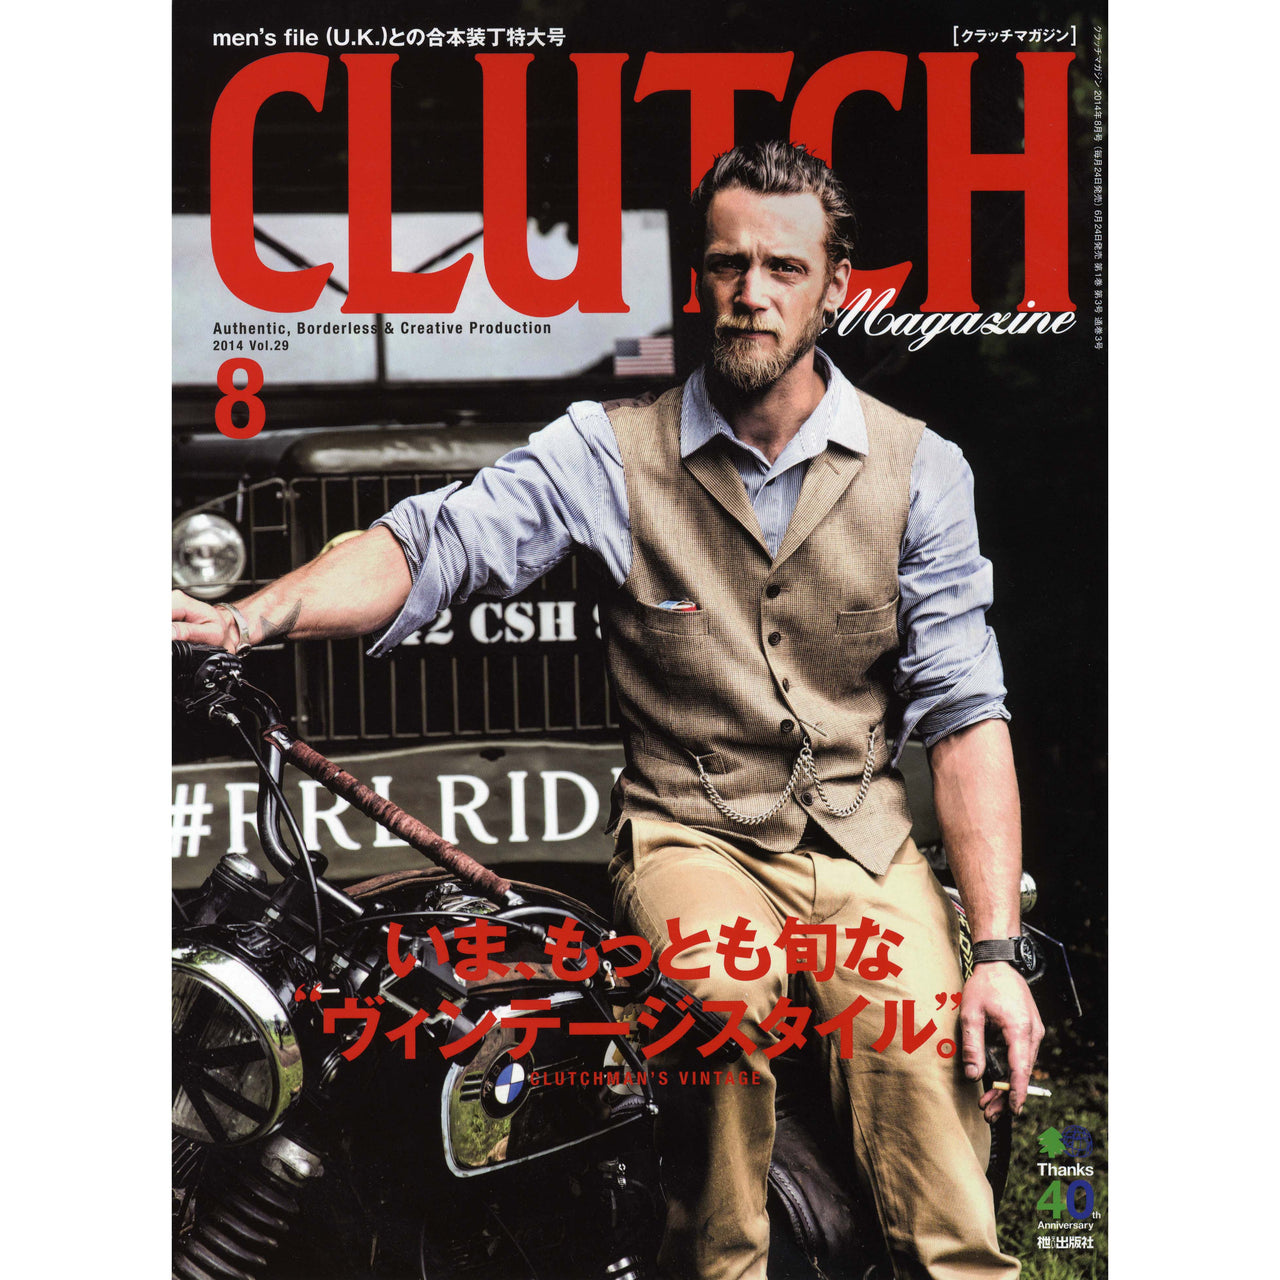 Clutch Magazine Vol.29-Clutch Cafe